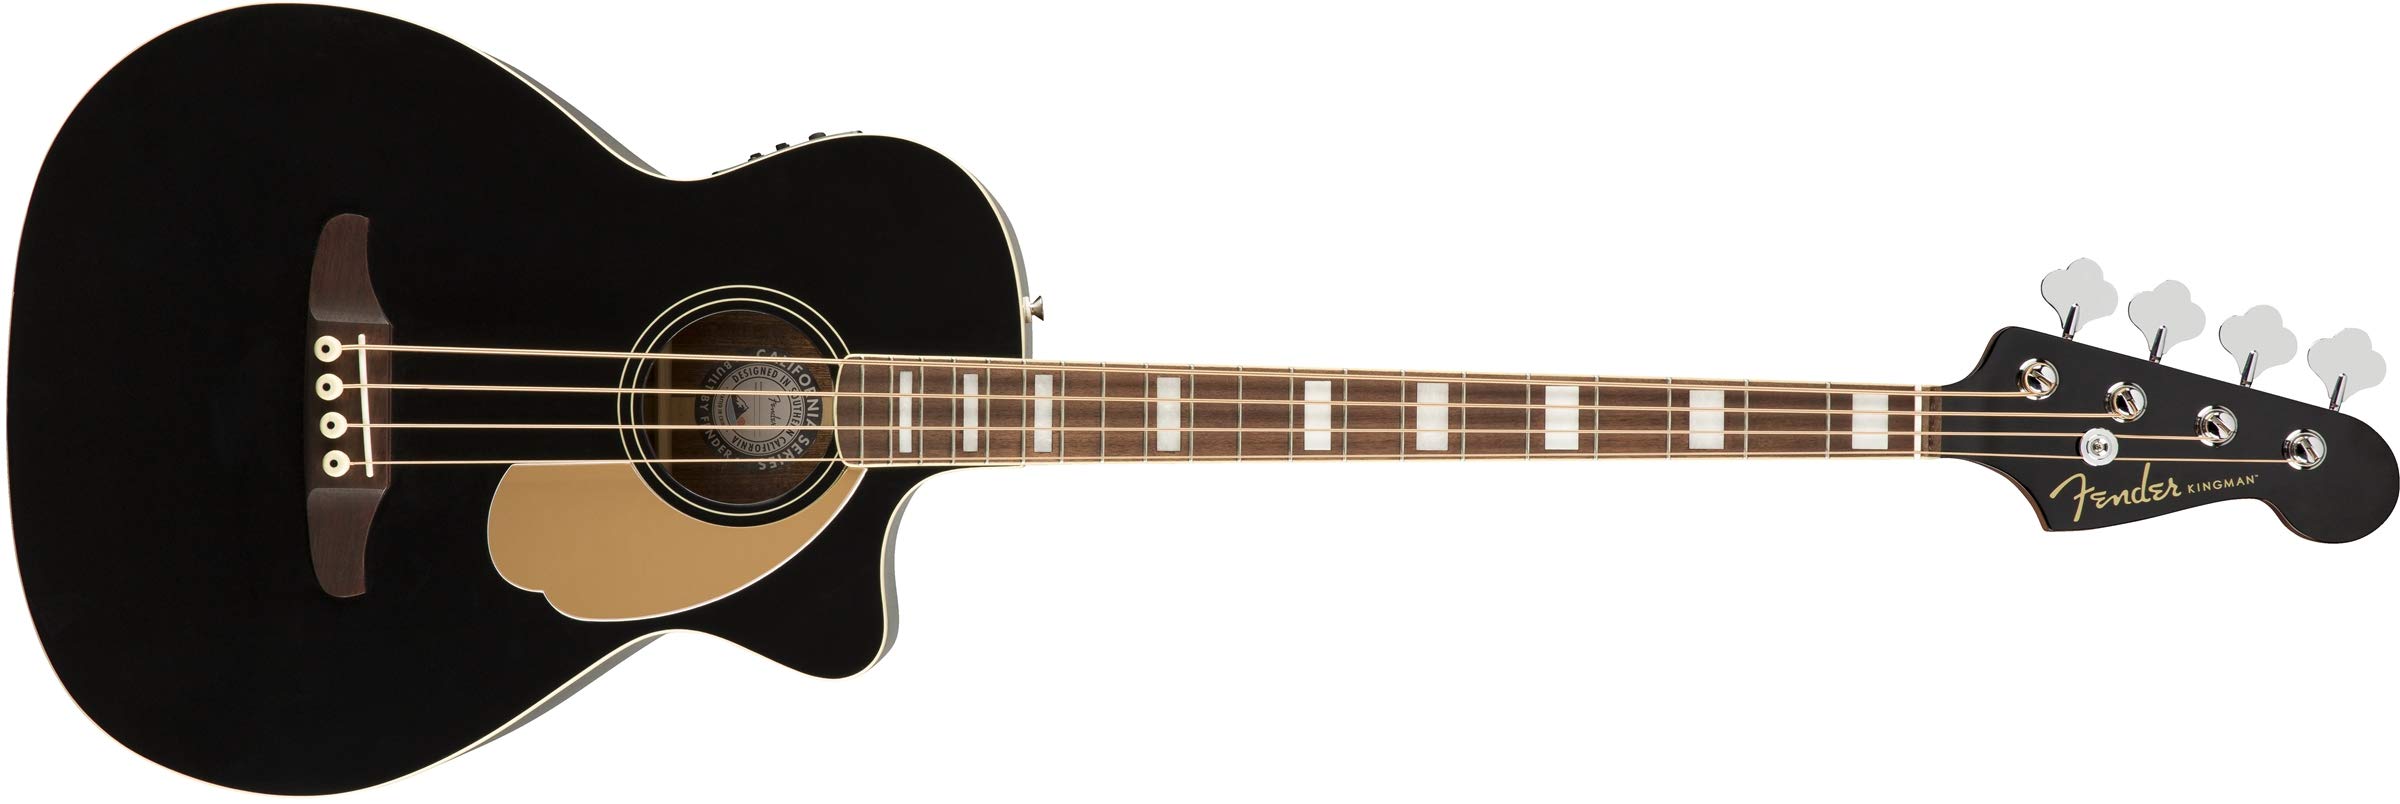 Fender किंगमैन ध्वनिक बास गिटार (V2) - काला - बैग के साथ - अखरोट फ़िंगरबोर्ड